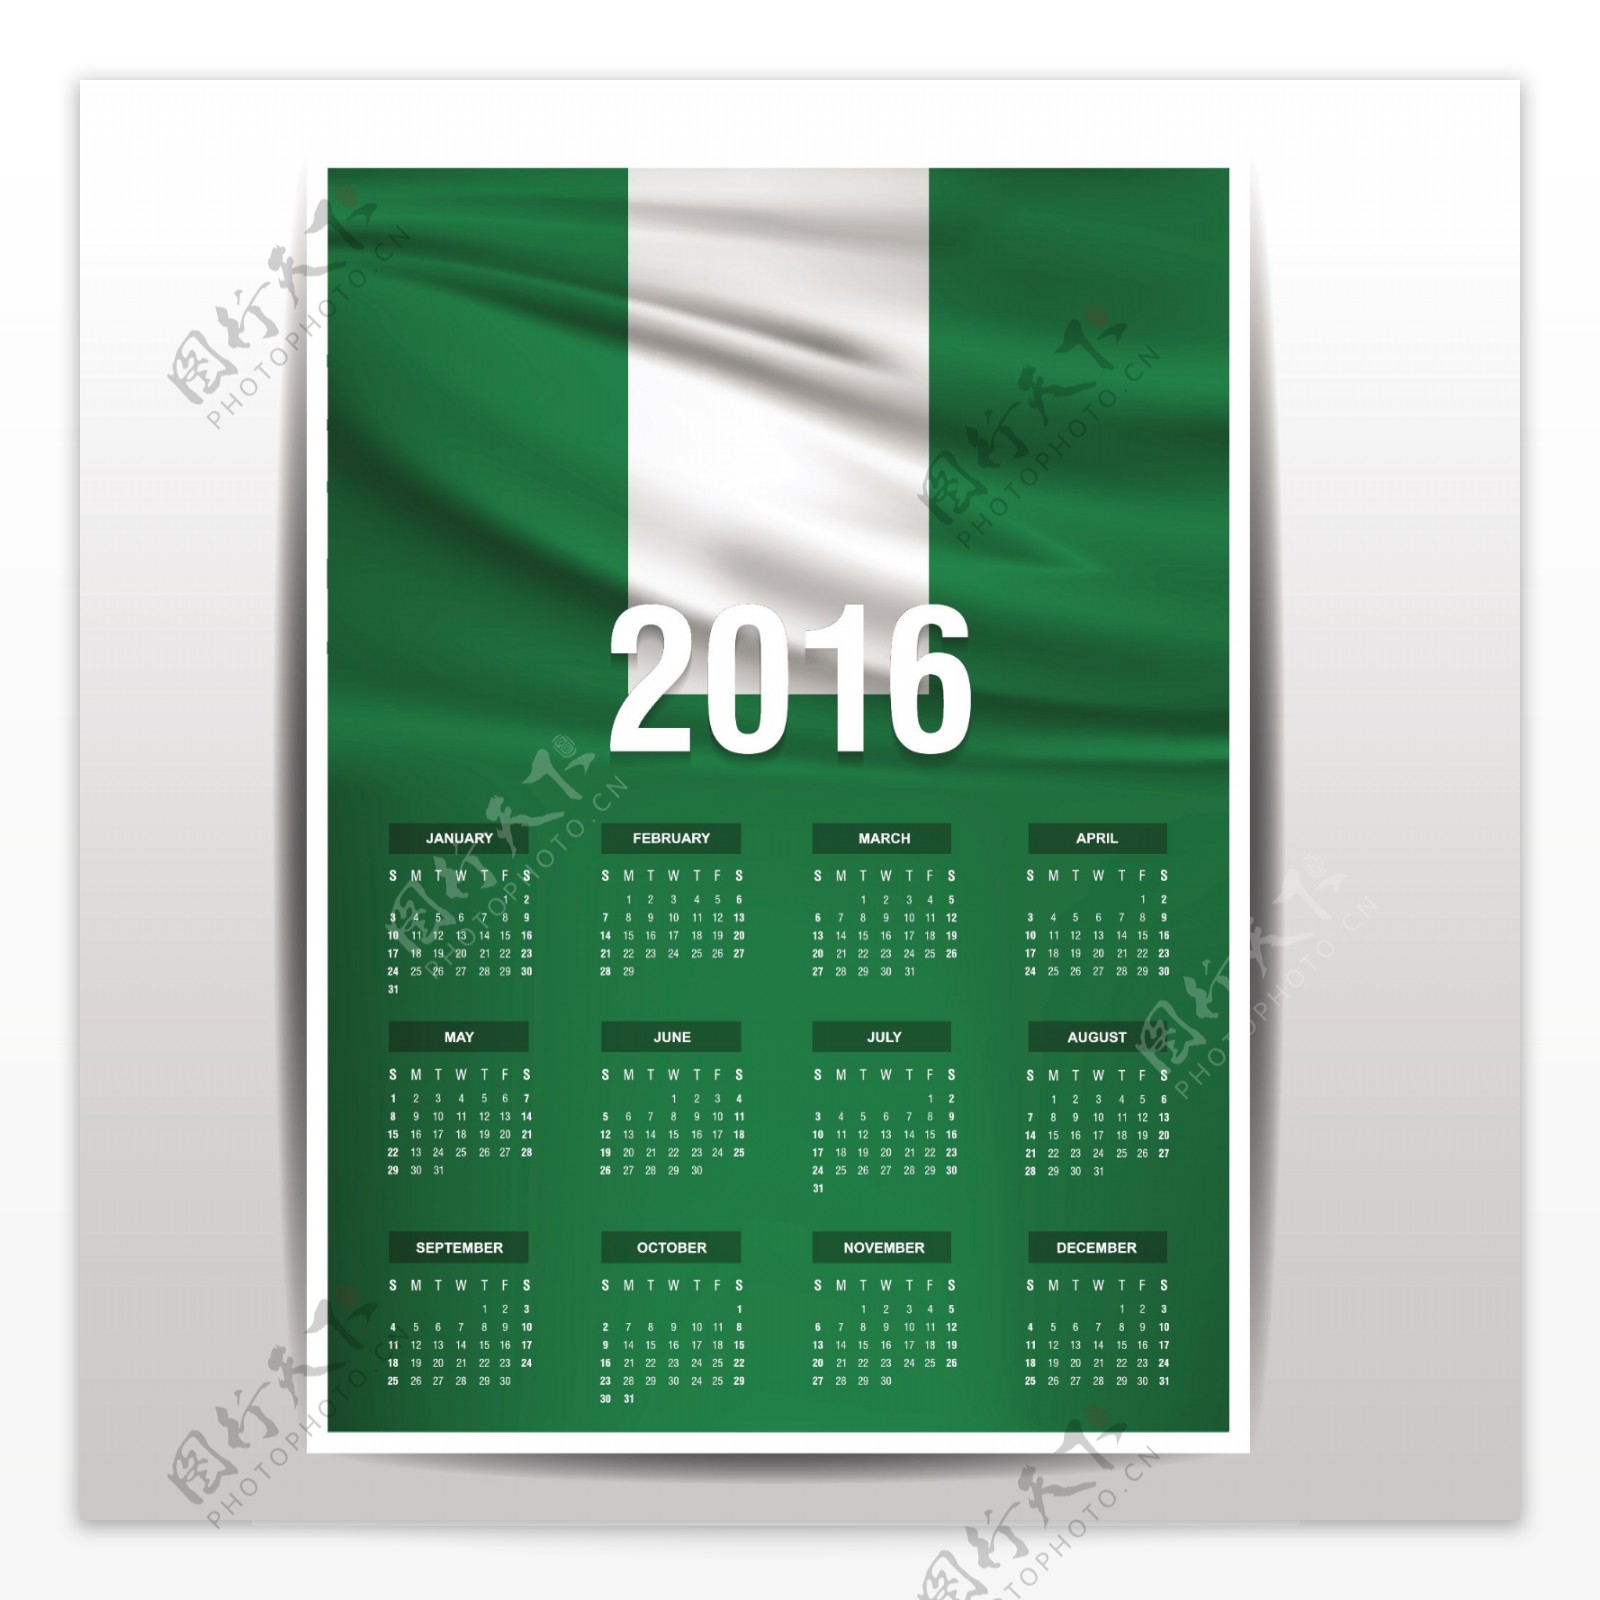 尼日利亚日历2016